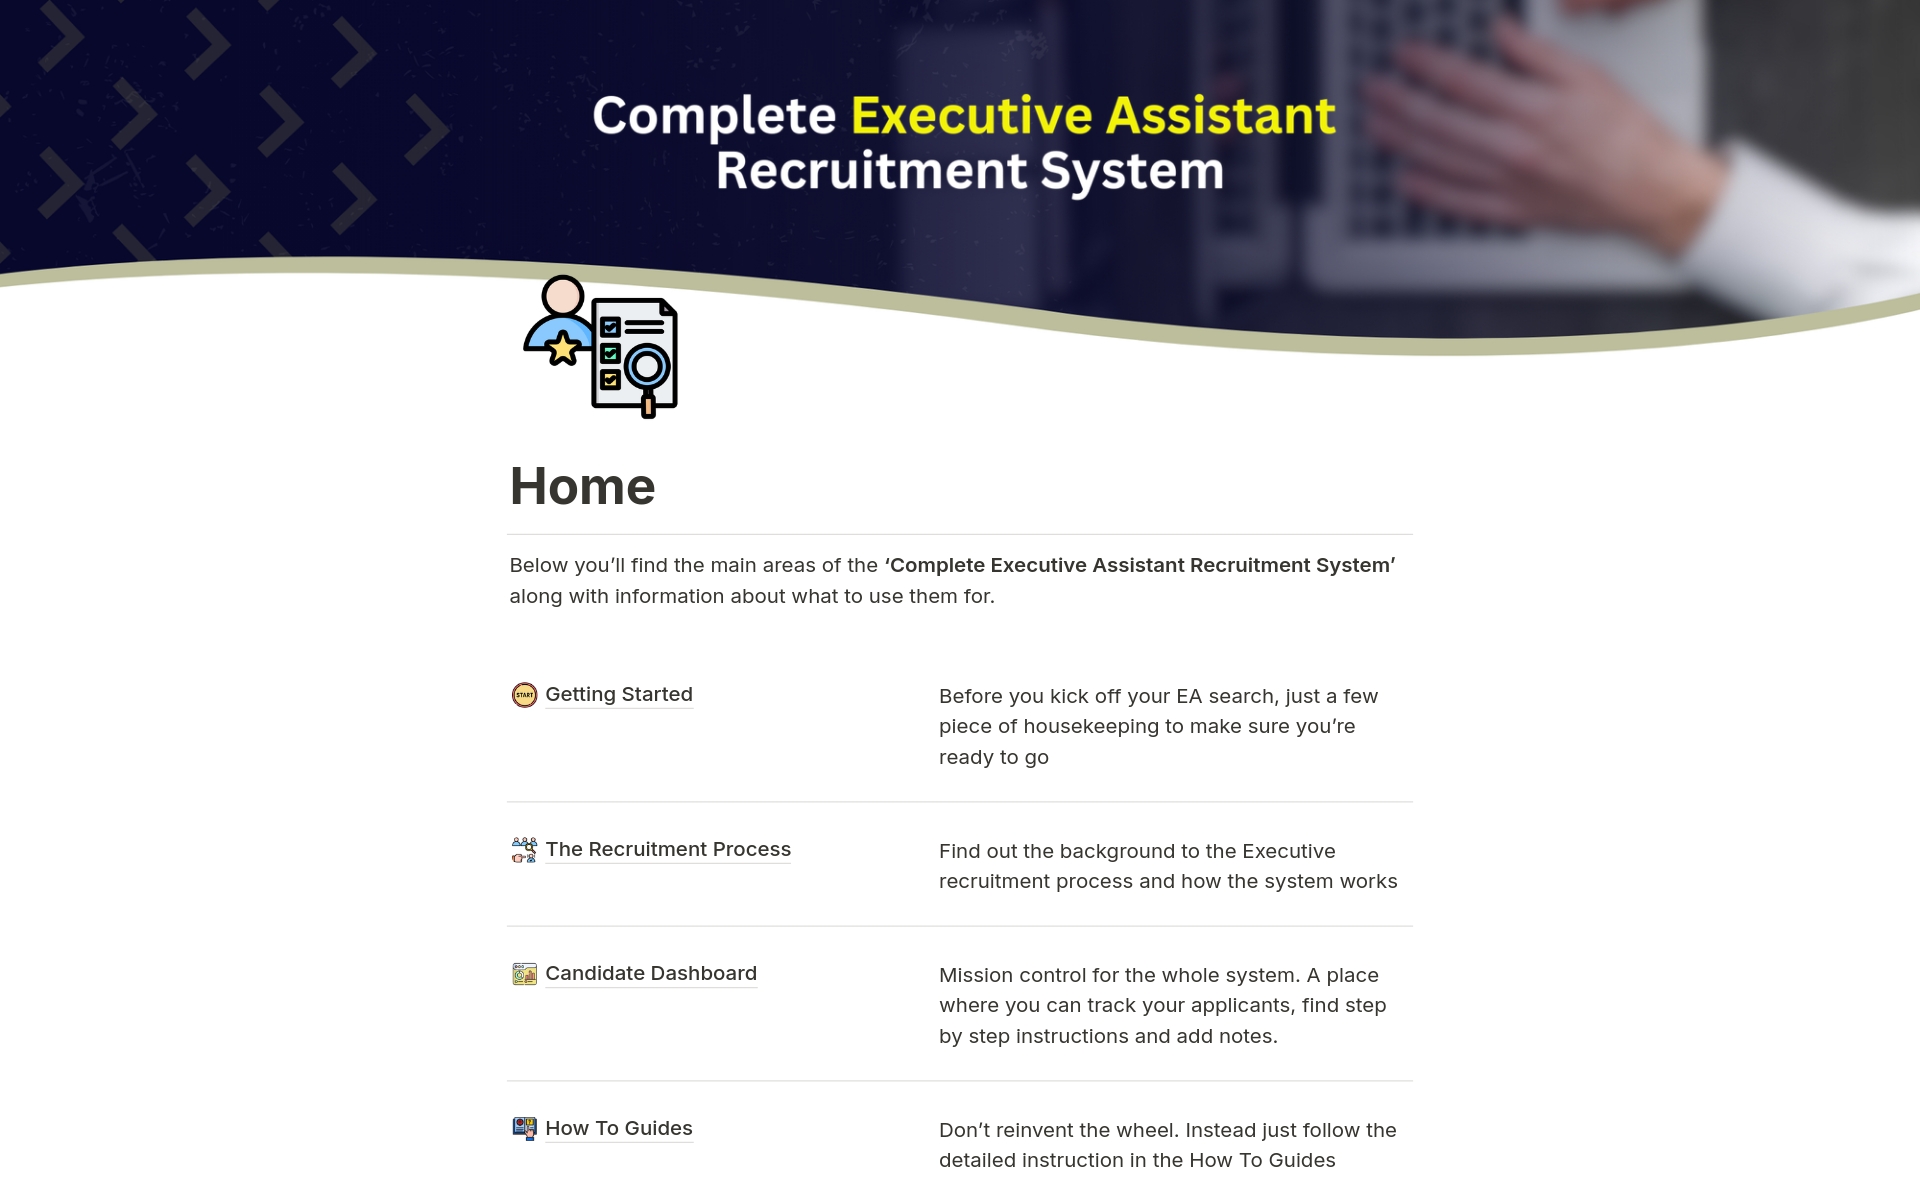 Uma prévia do modelo para Complete Executive Assistant Recruitment System